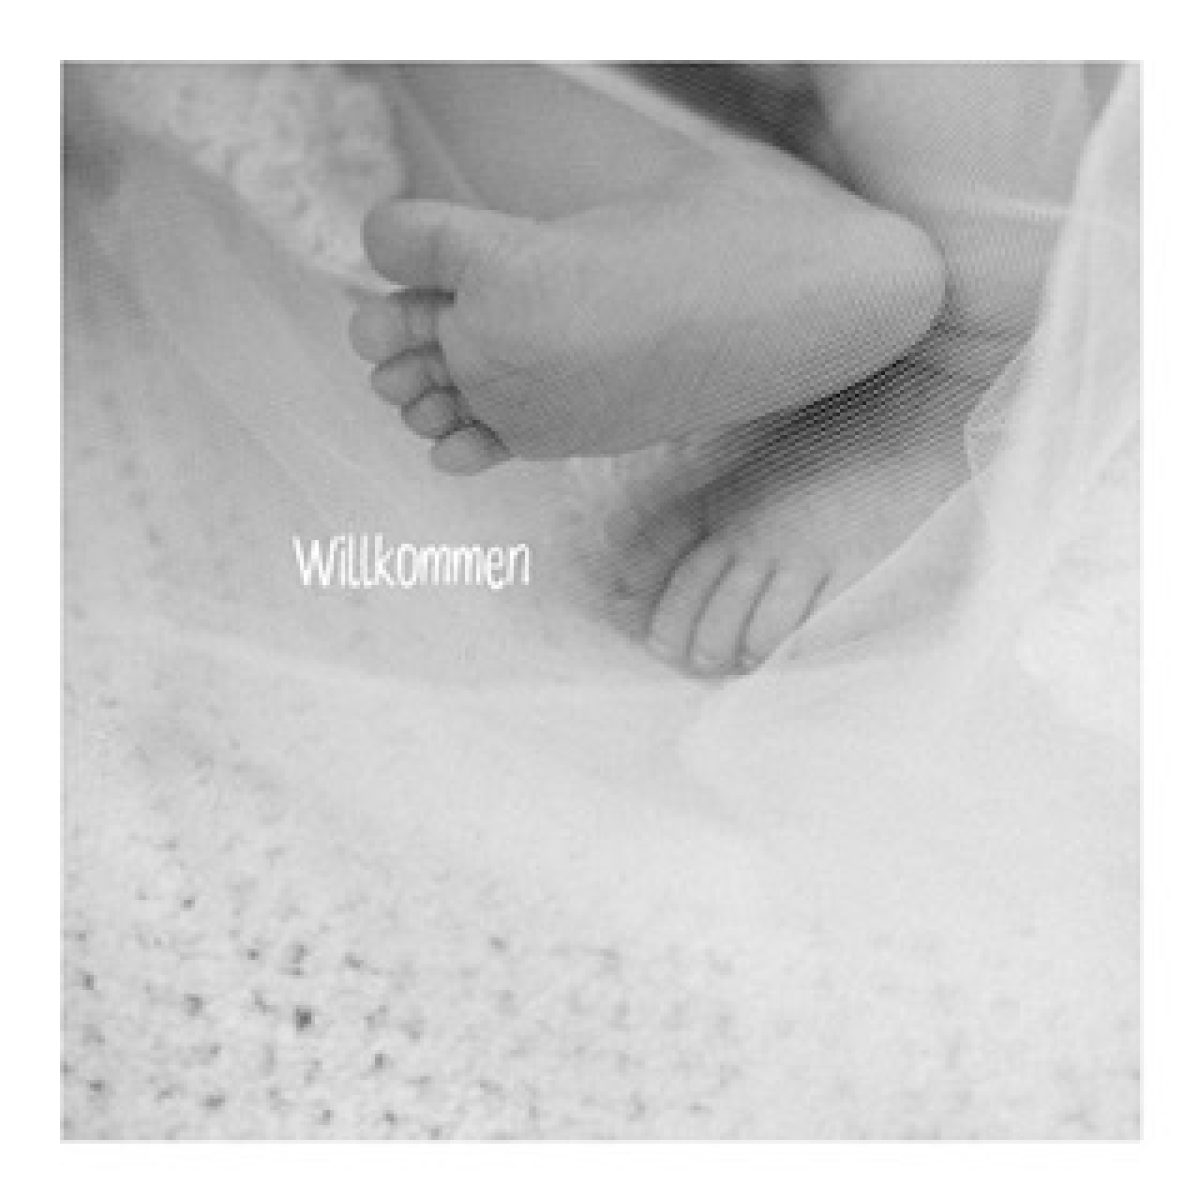 Postkarte "Willkommen" mit Baby-Füßen